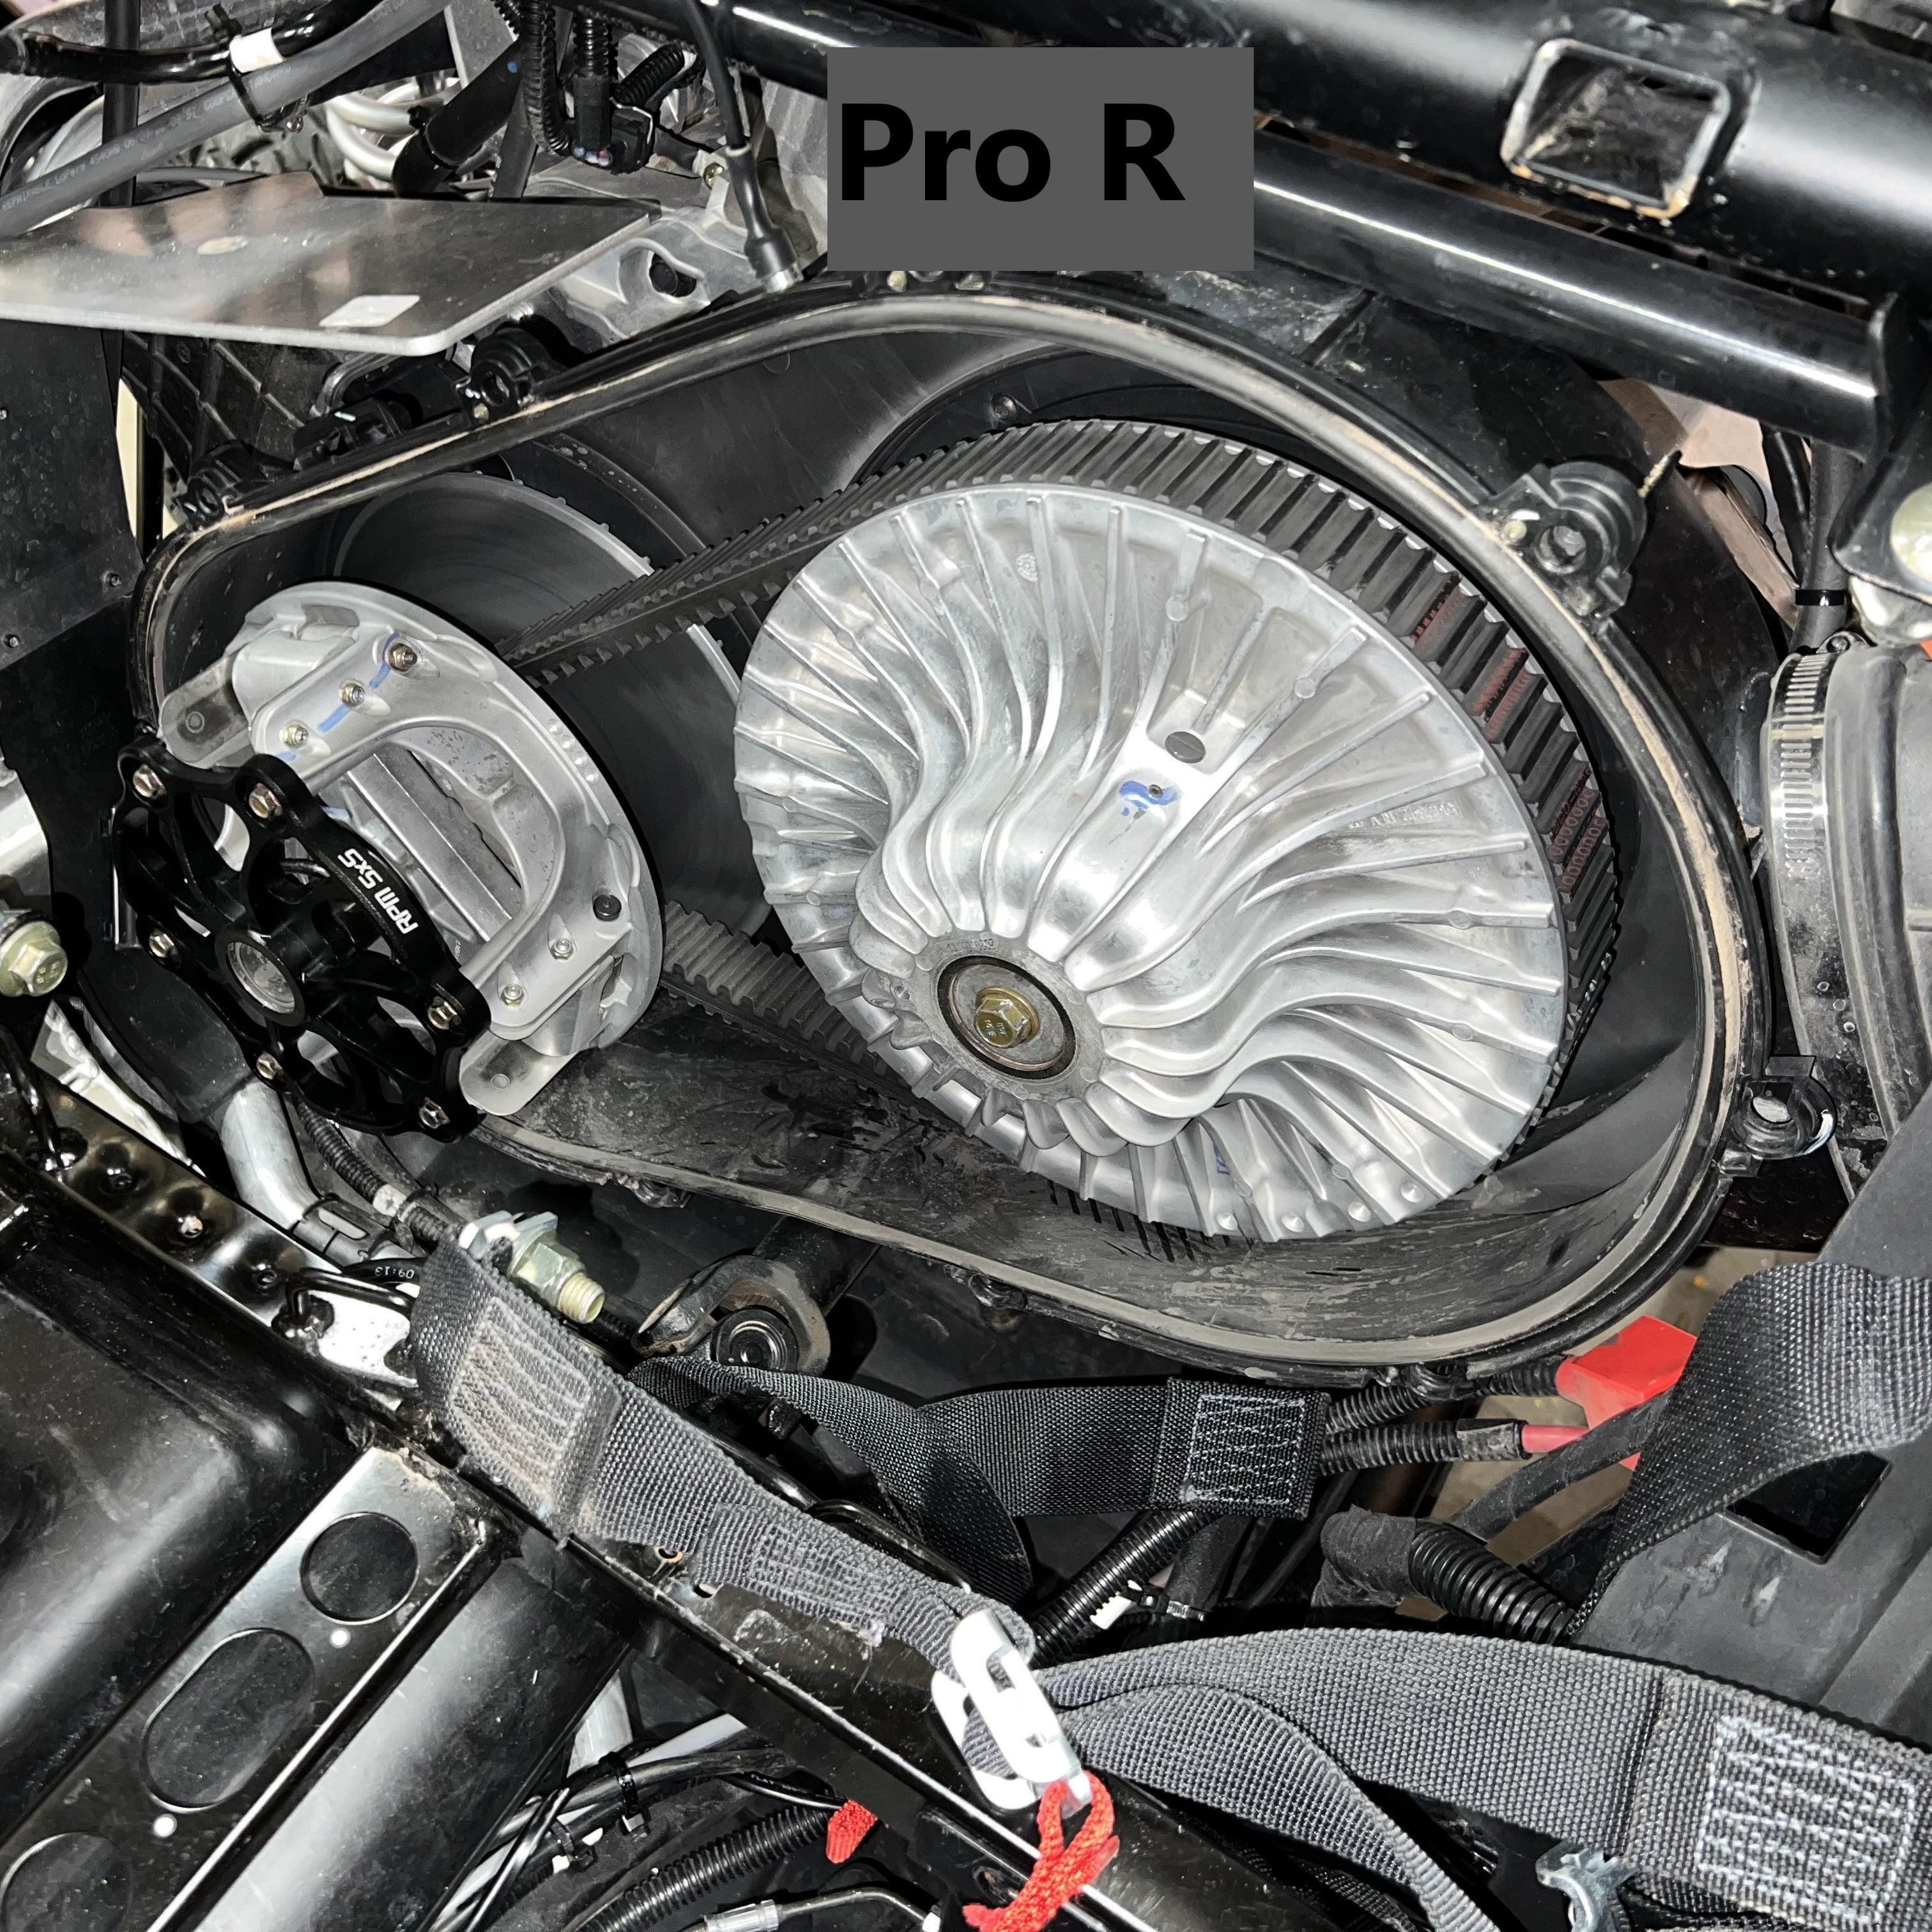 RPM Billet " Cooler " P90x Clutch Cover / Brace RZR Pro XP, Turbo R, Pro R - RPM SXS